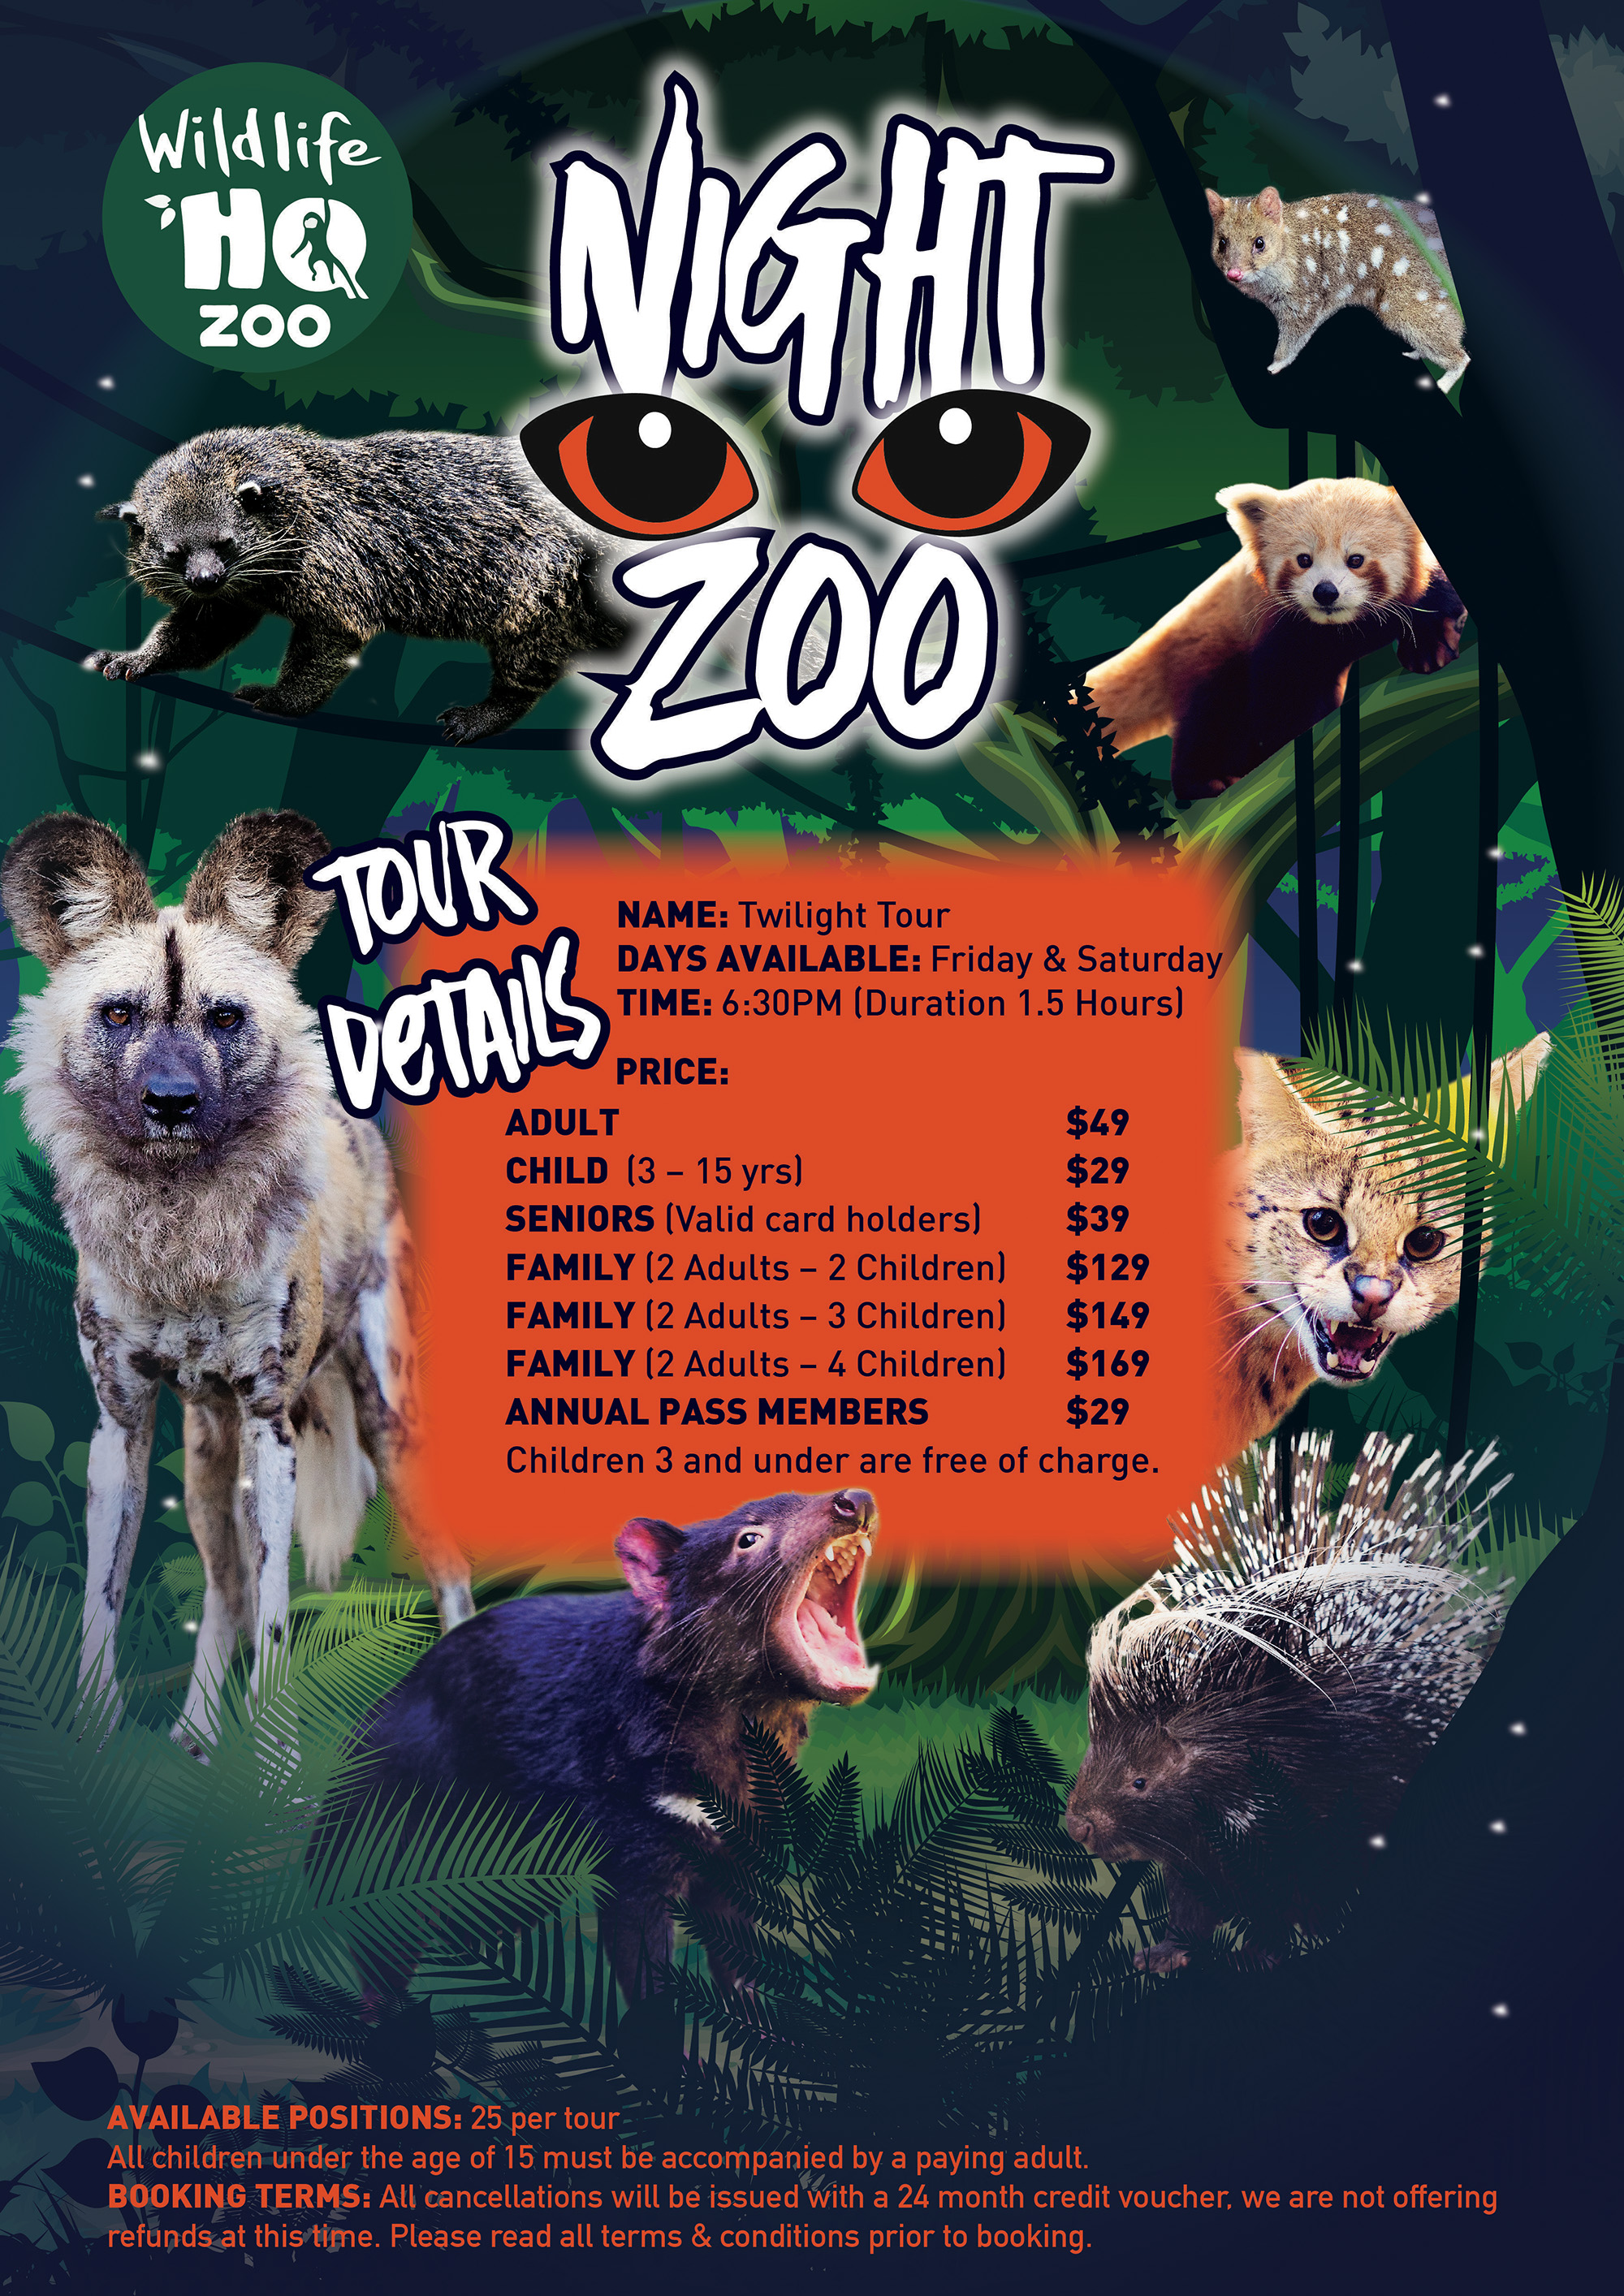 Night Zoo Wildlife HQ